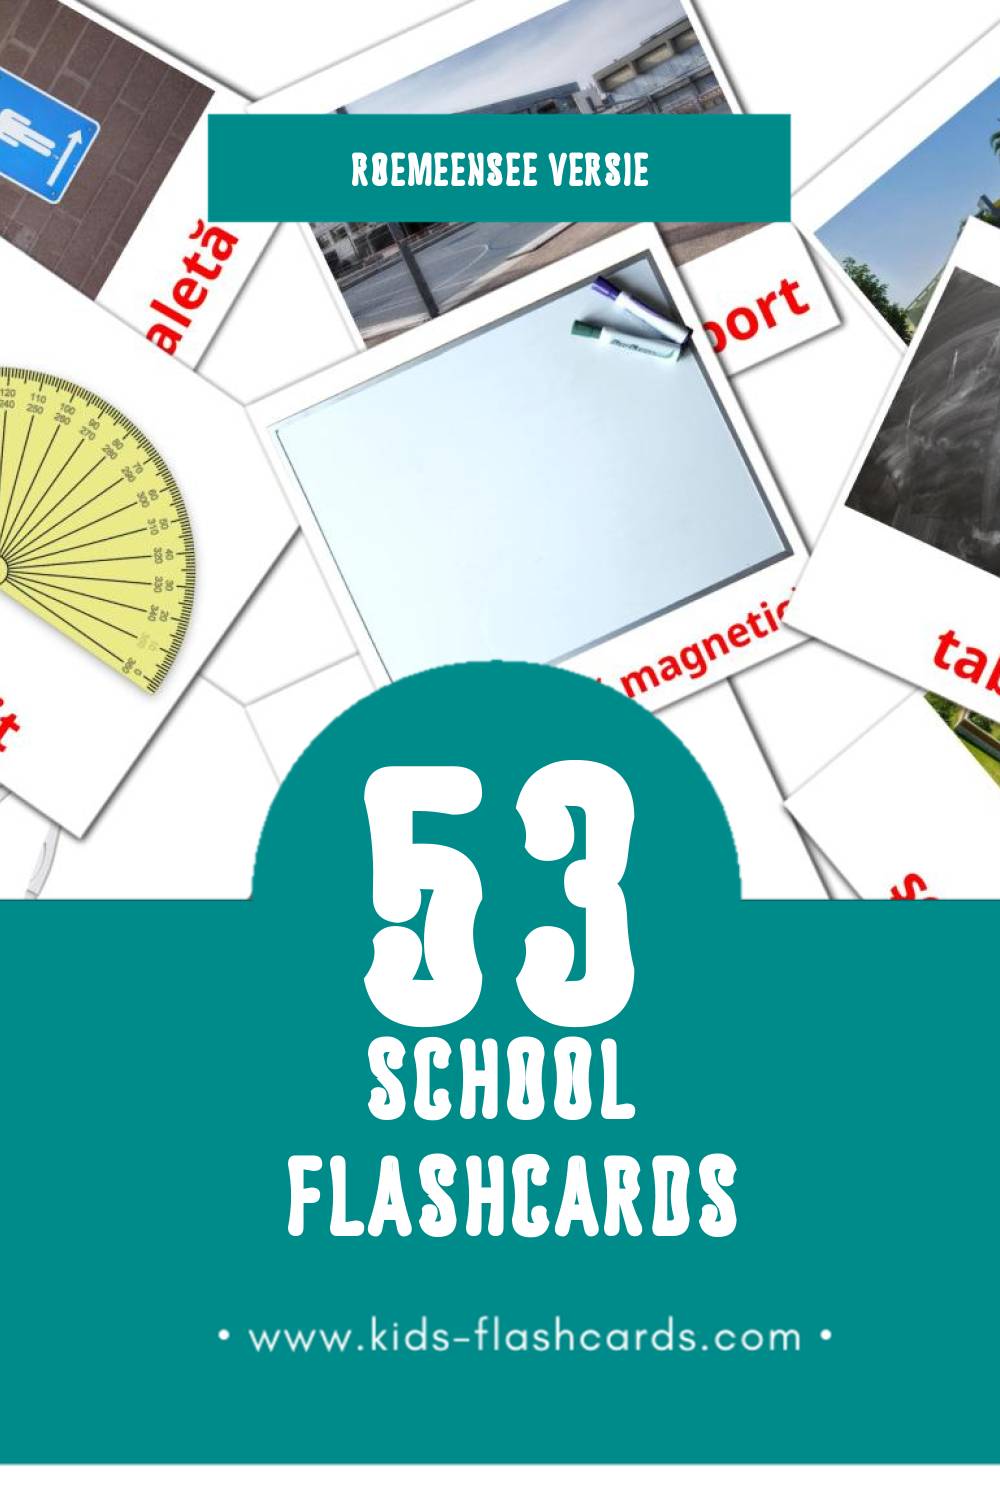 Visuele Şcoală Flashcards voor Kleuters (53 kaarten in het Roemeense)